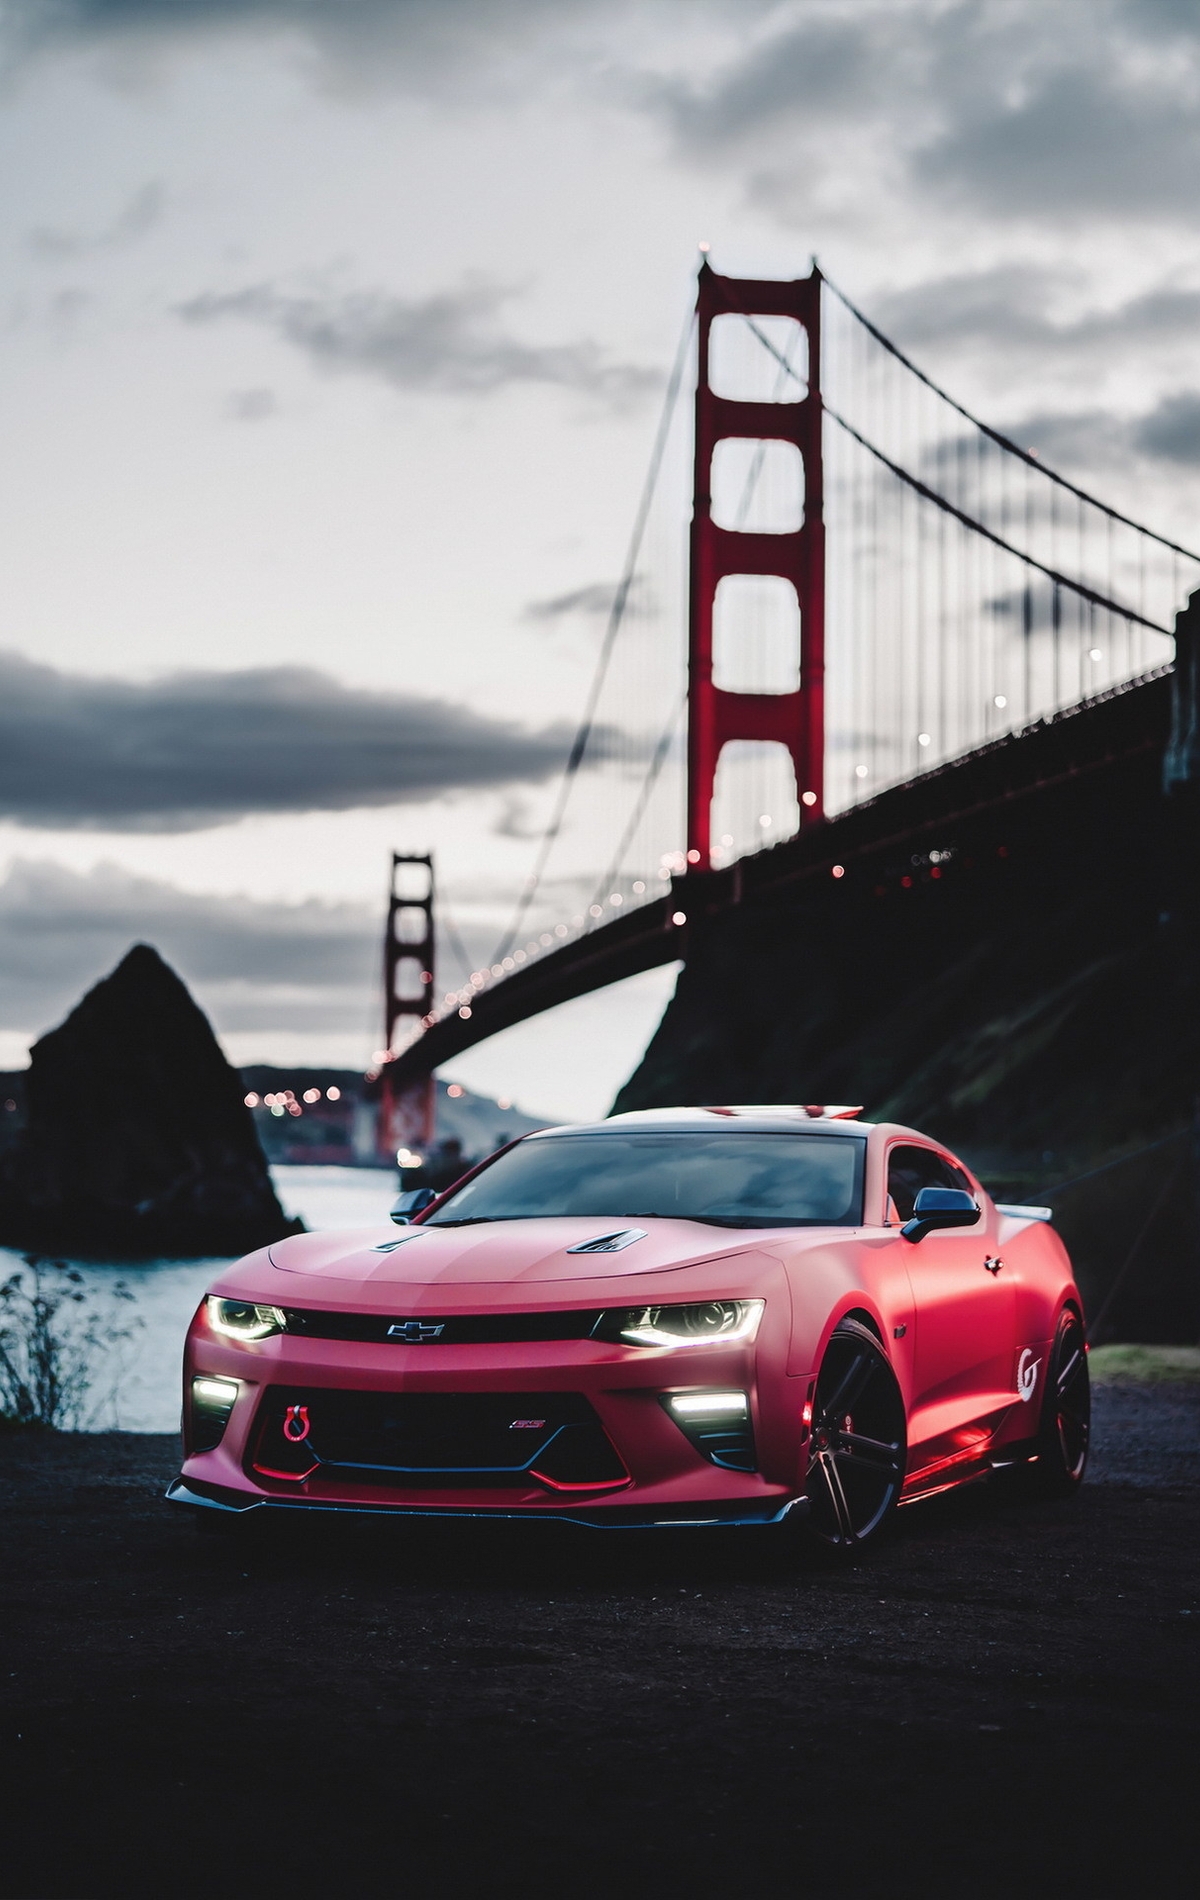 Картинка: Автомобиль, Chevrolett, Comaro, красный, мост, море, темень